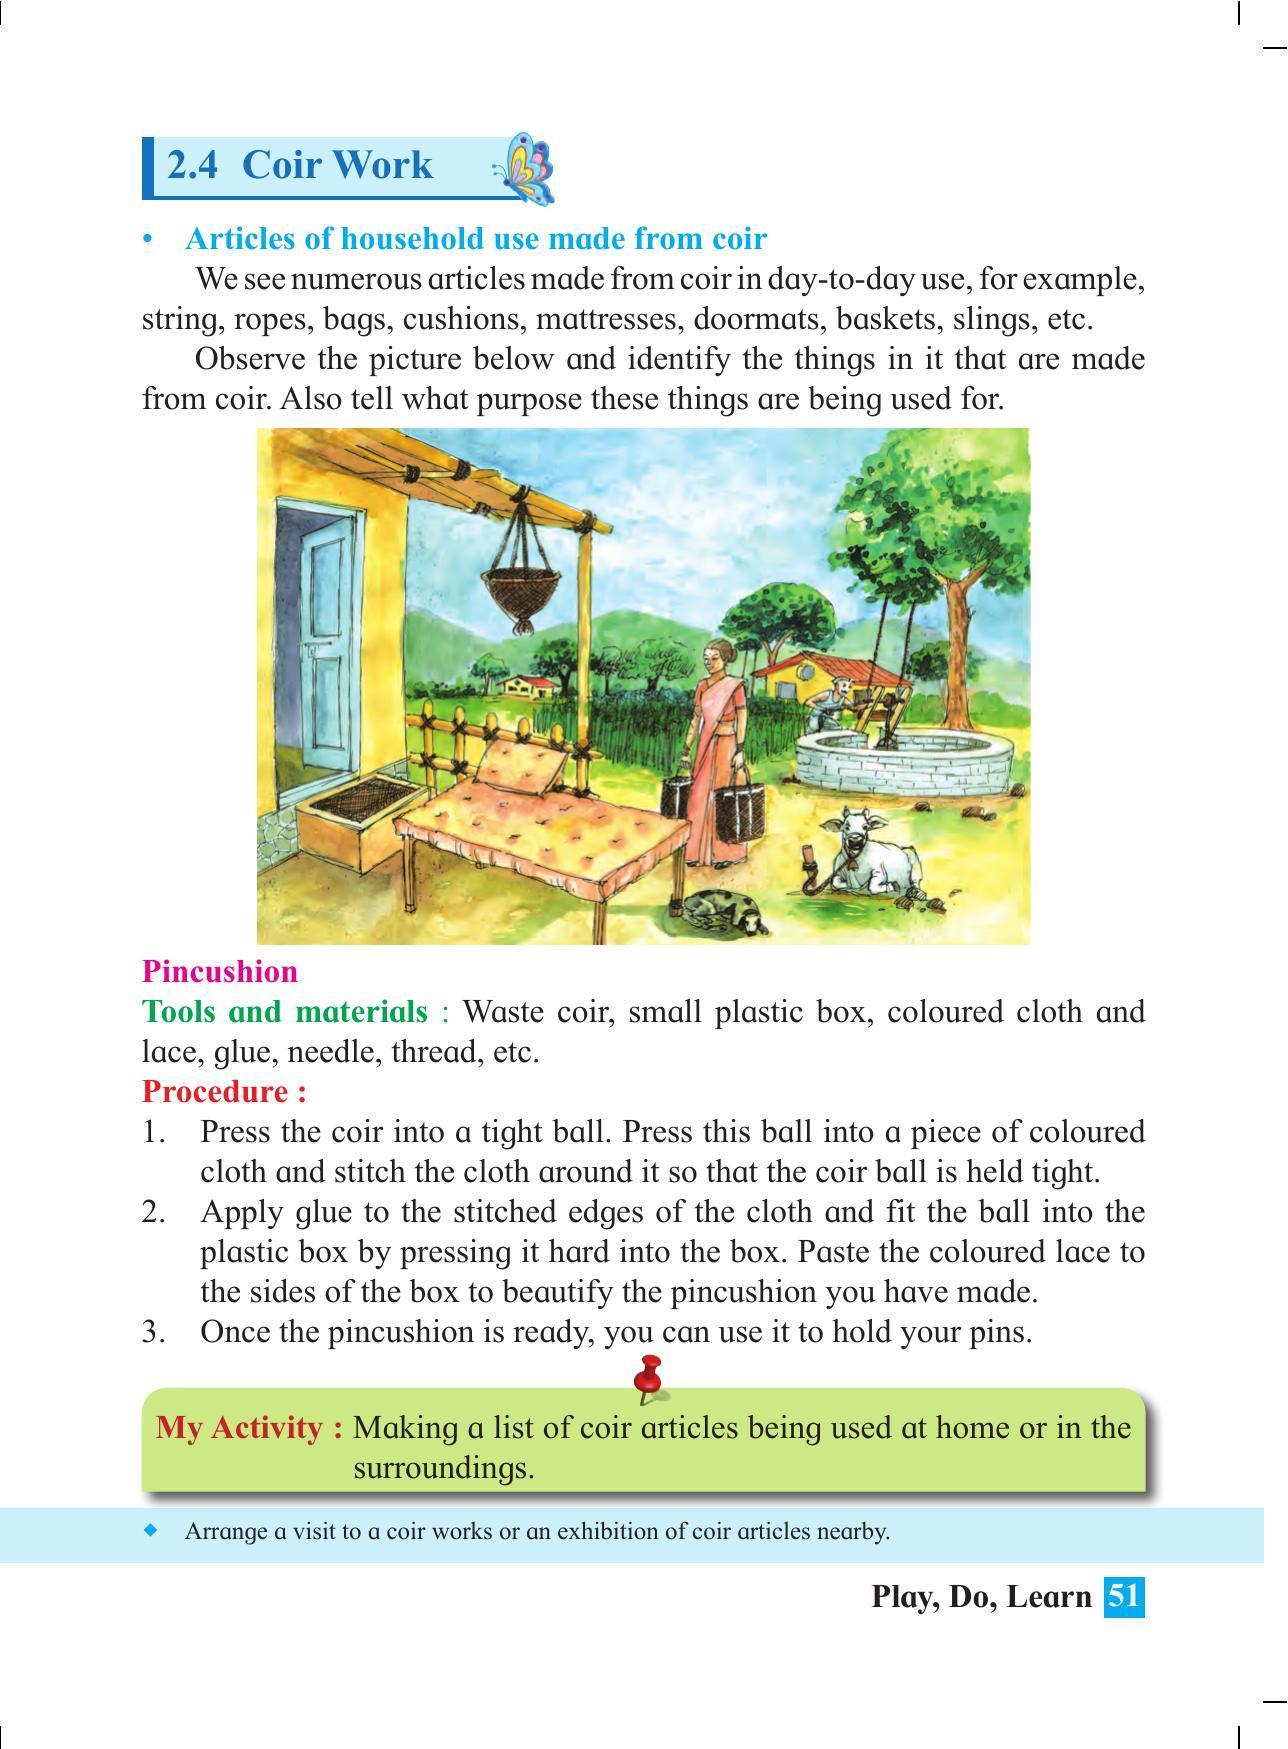 Maharashtra Board Class 4 Play Do Learn (English Medium) Textbook - Page 60